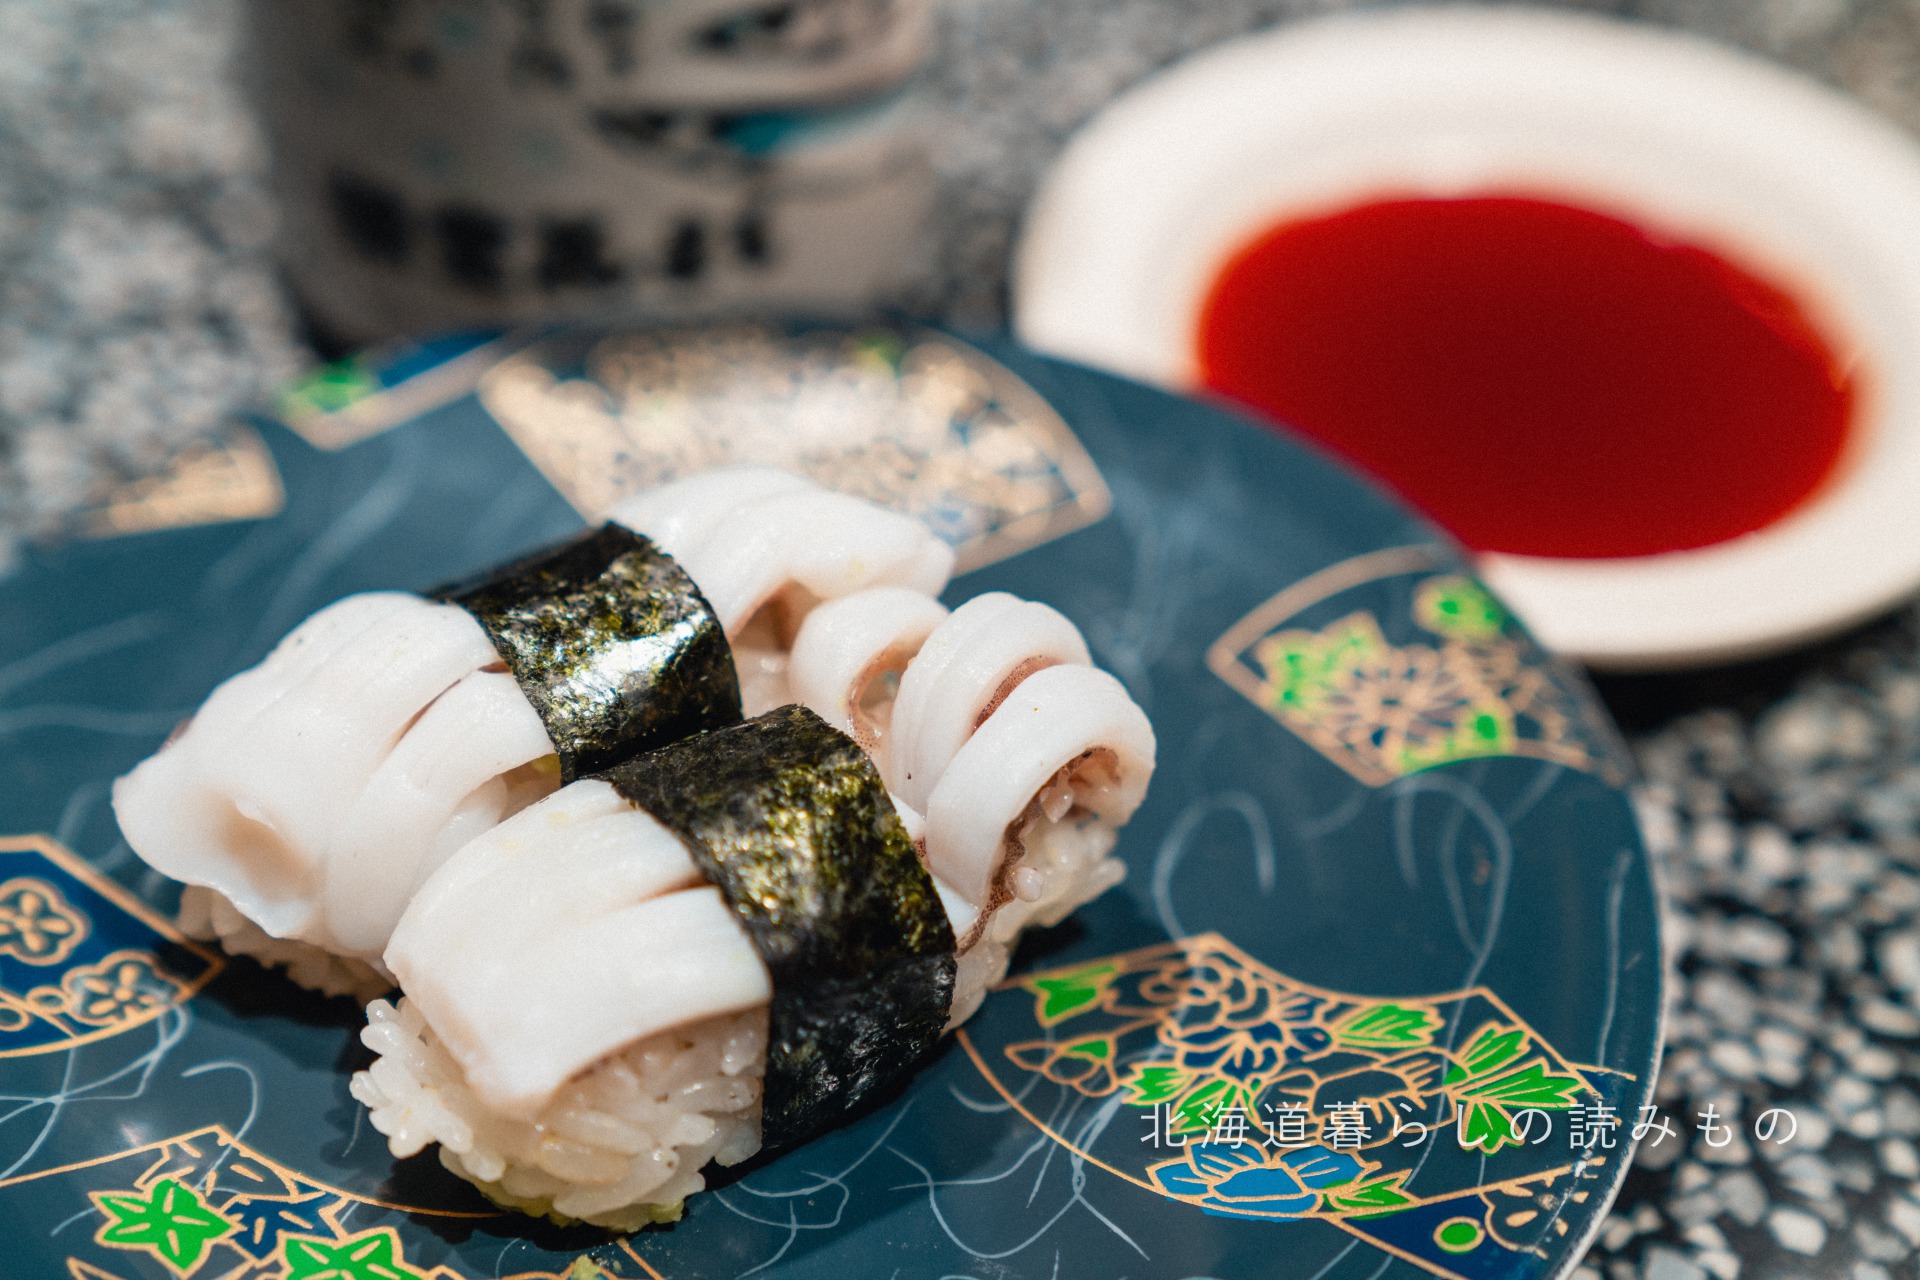 回転寿司 根室花まるのメニュー「いかげそ握り」の写真